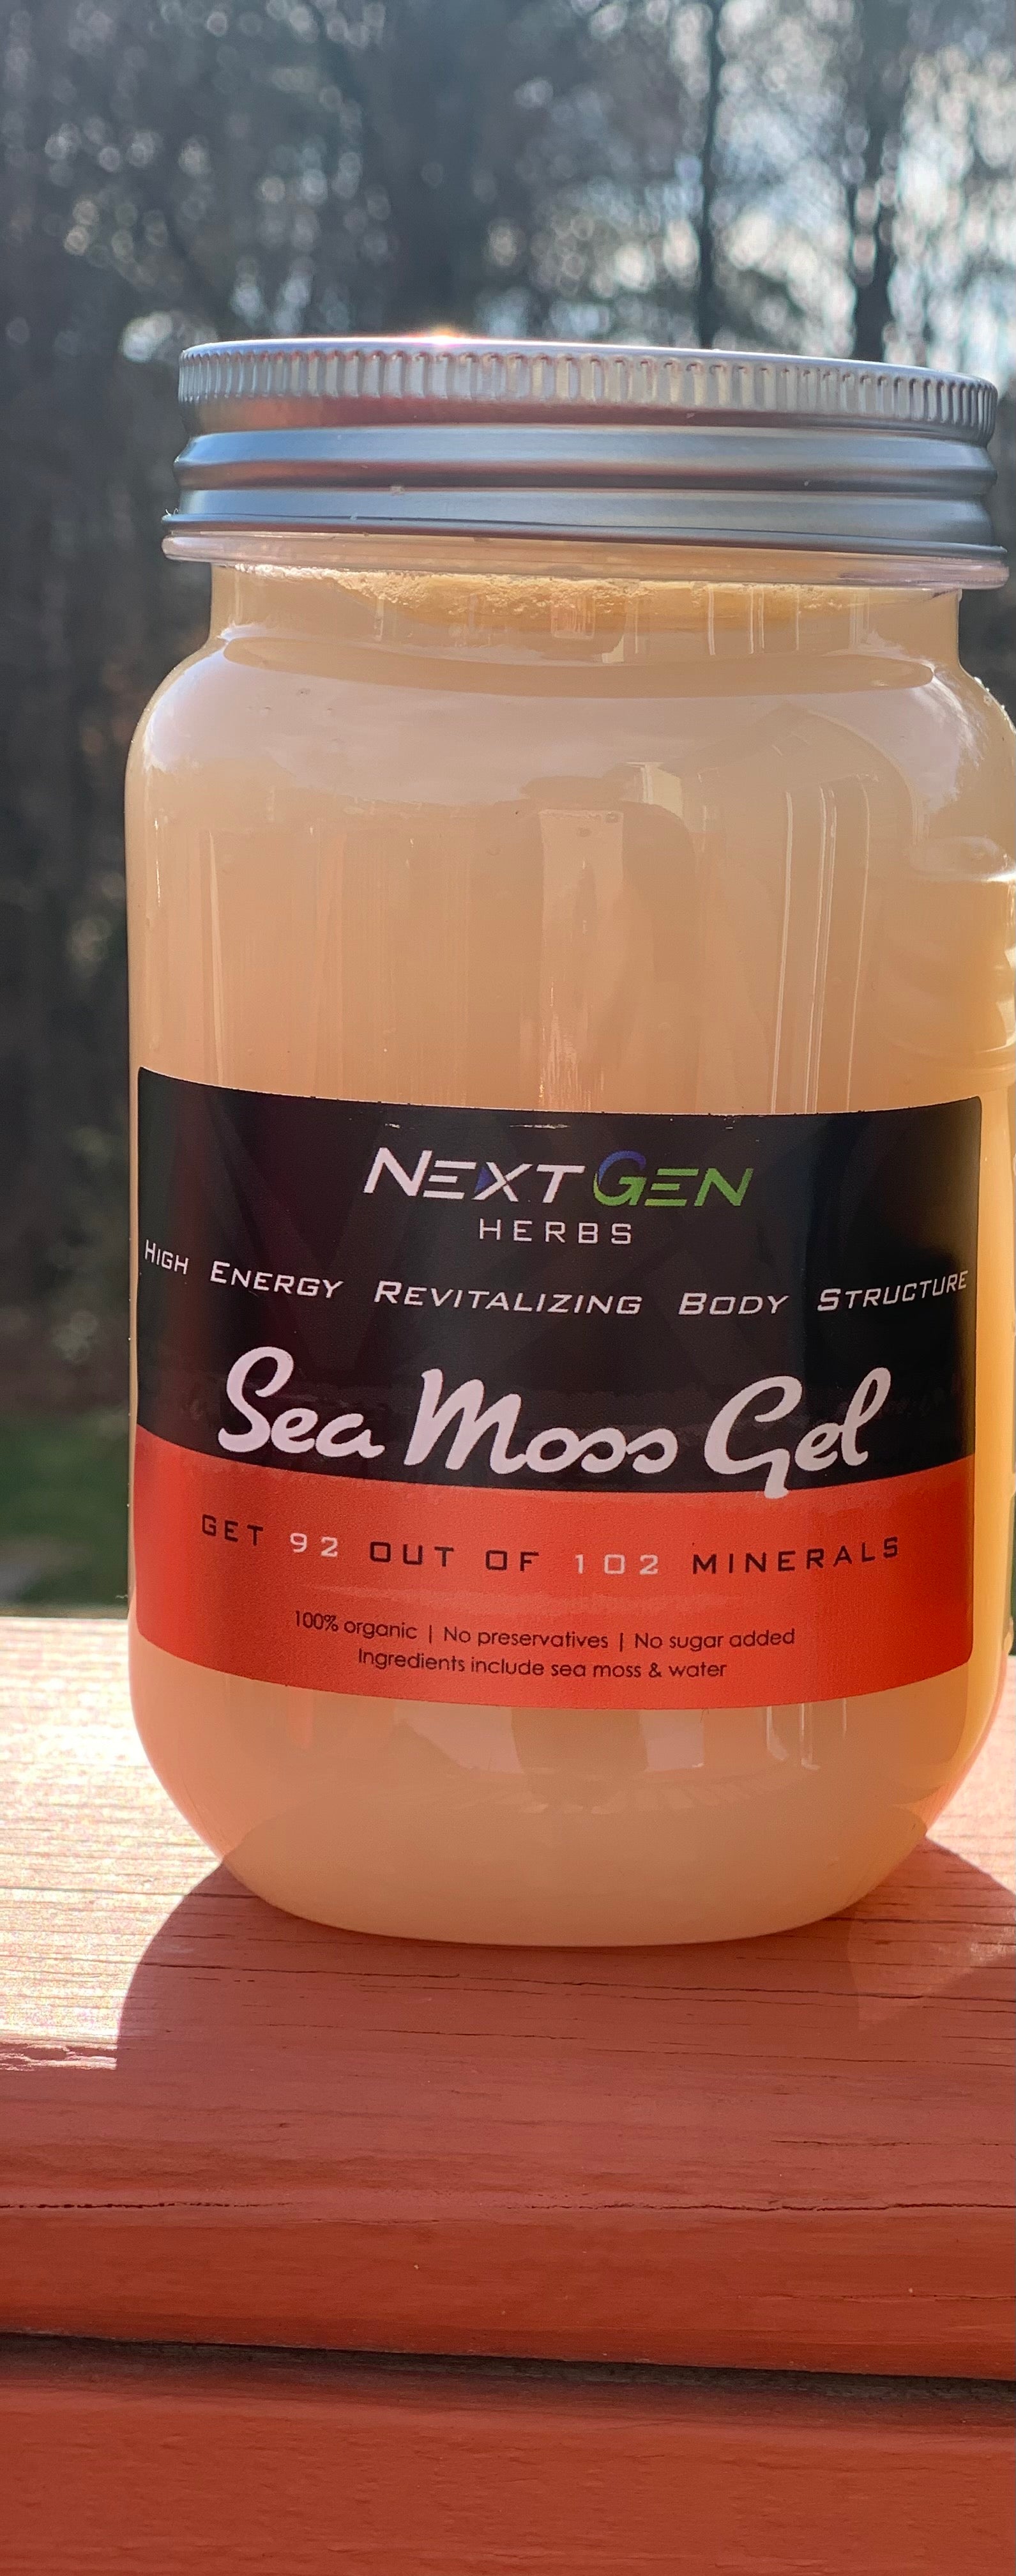 Original Sea Moss Gel